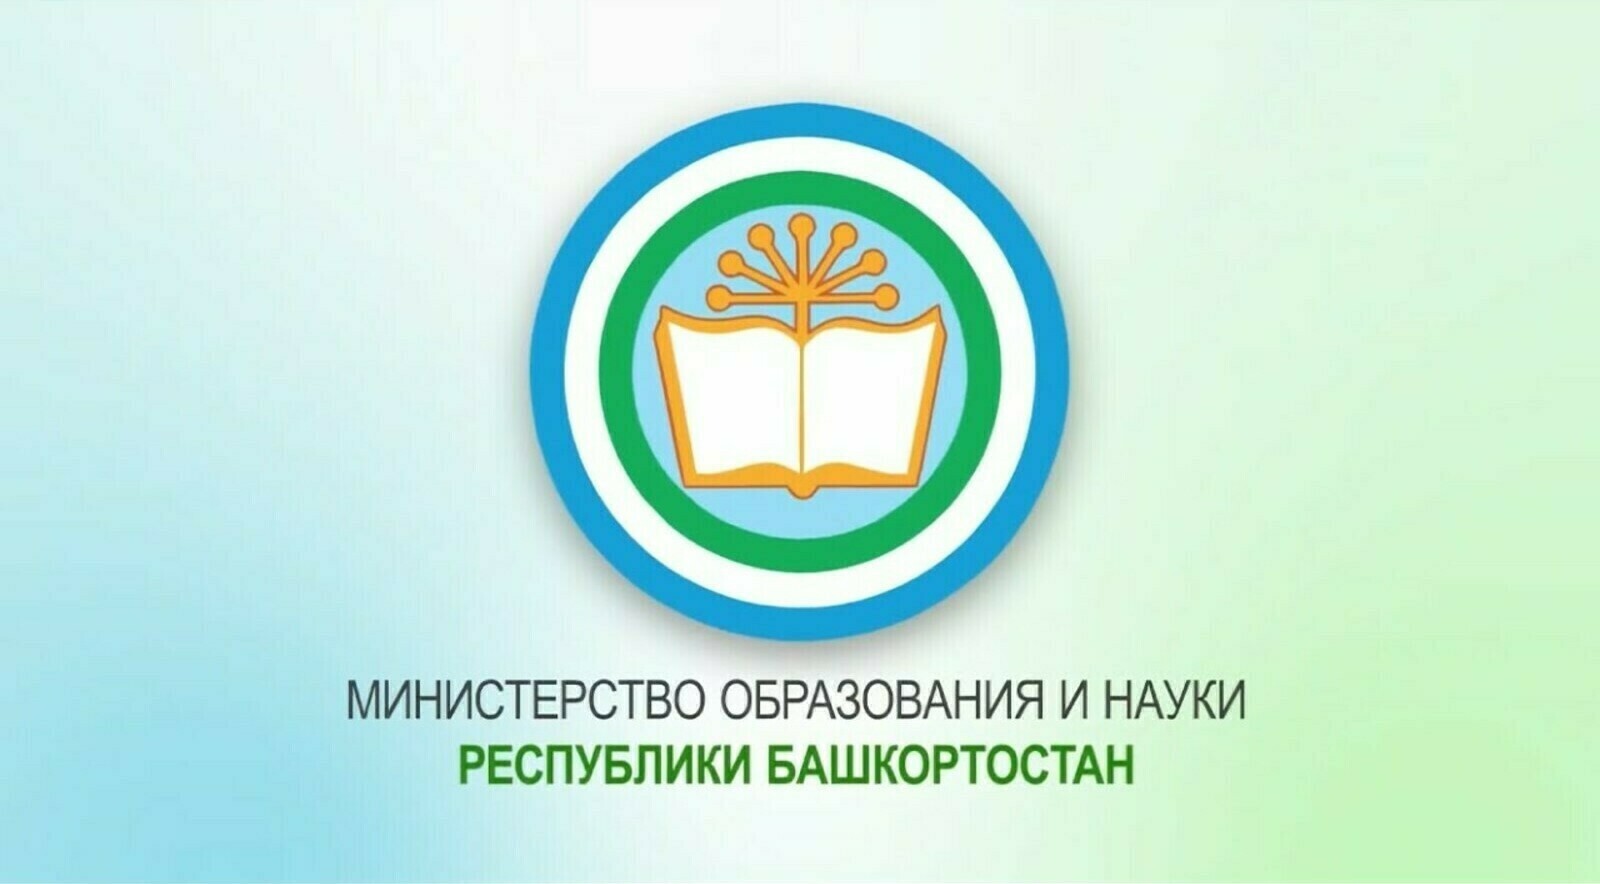 В Башкортостане создадут Международный центр профессионального образования